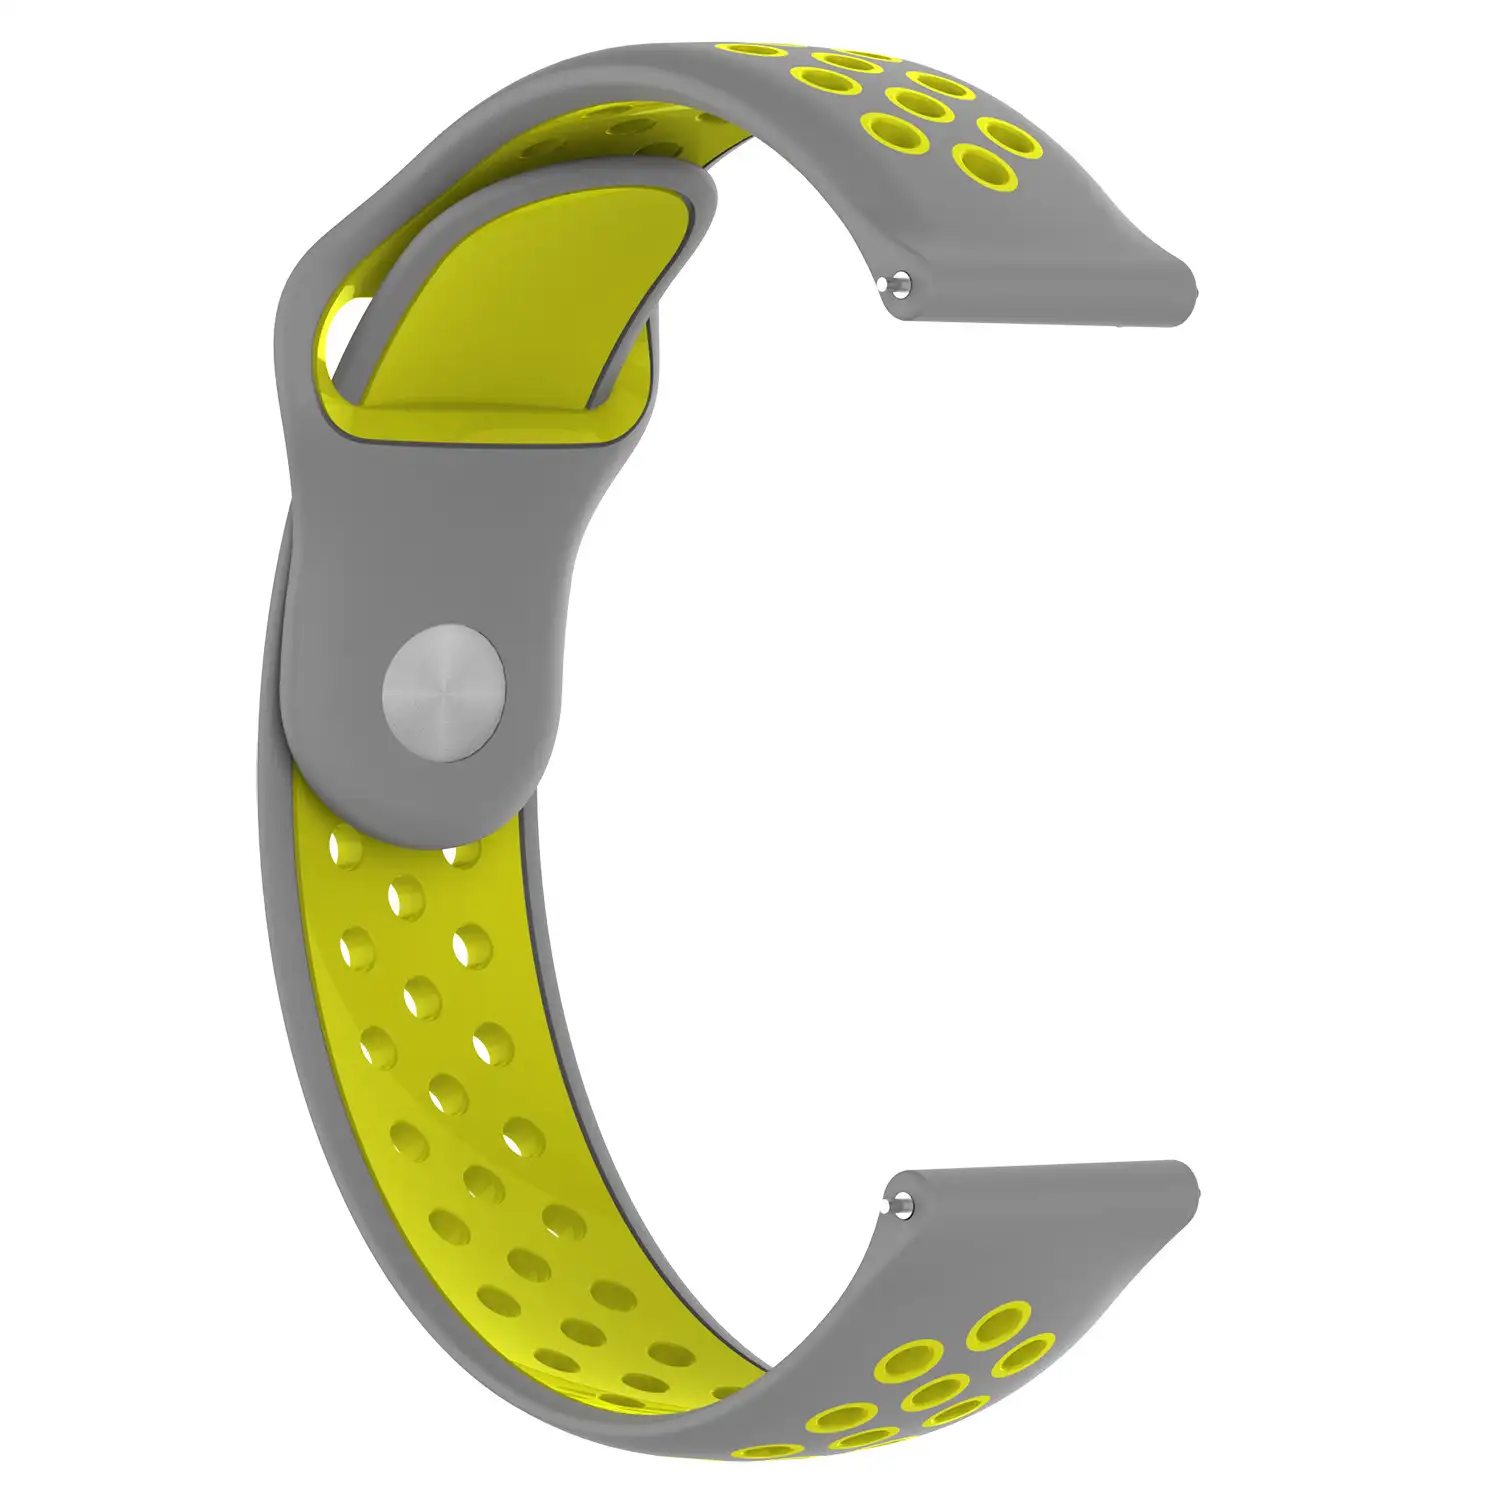 Correa deportiva universal de silicona para relojes de 18mm. Sistema Quick Release de fácil cambio.